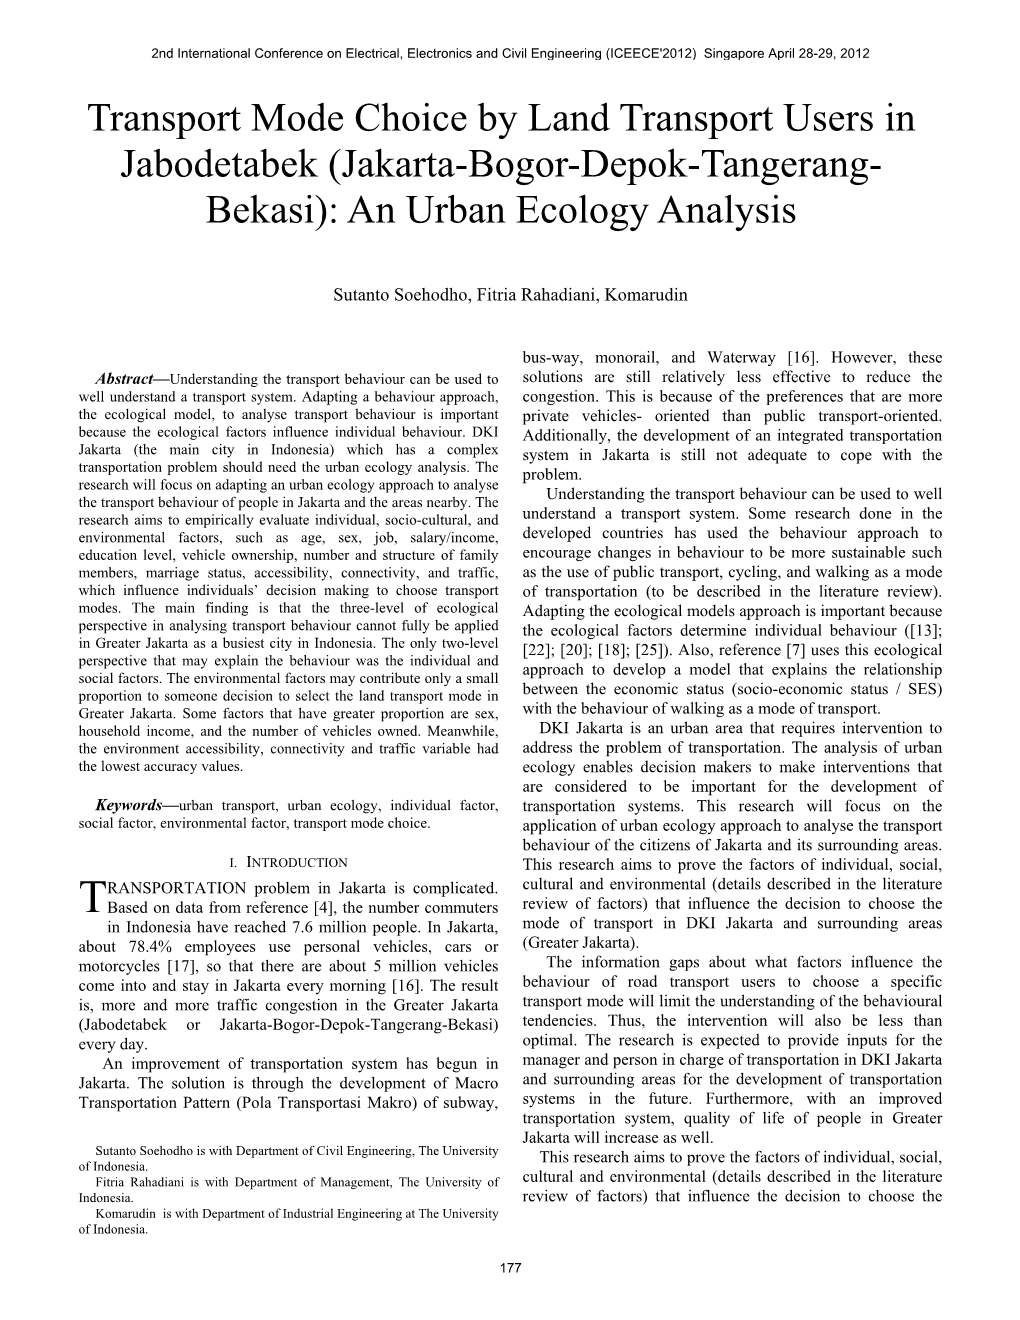 Jakarta-Bogor-Depok-Tangerang- Bekasi): an Urban Ecology Analysis